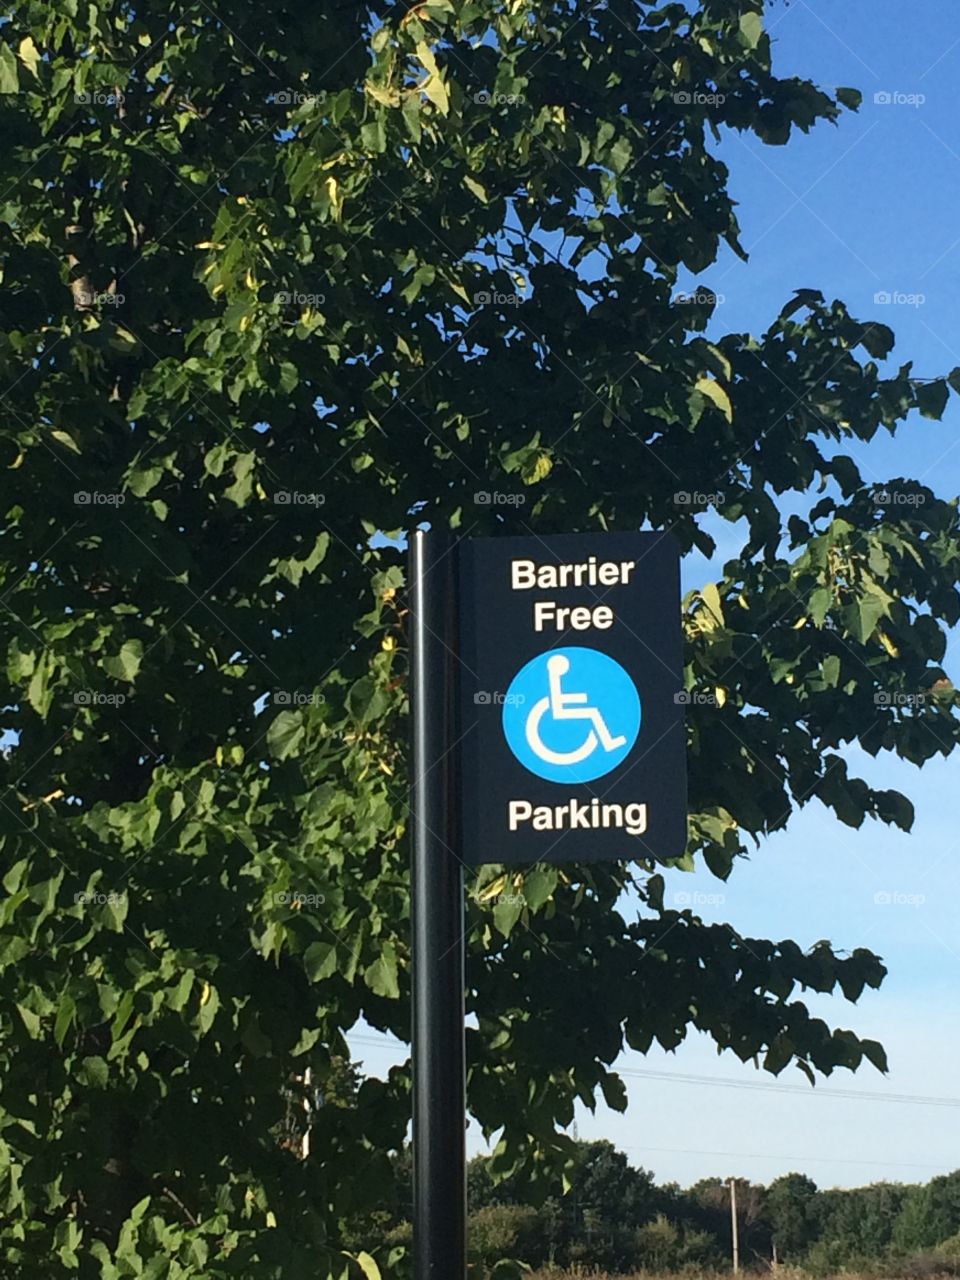 Berries free parking